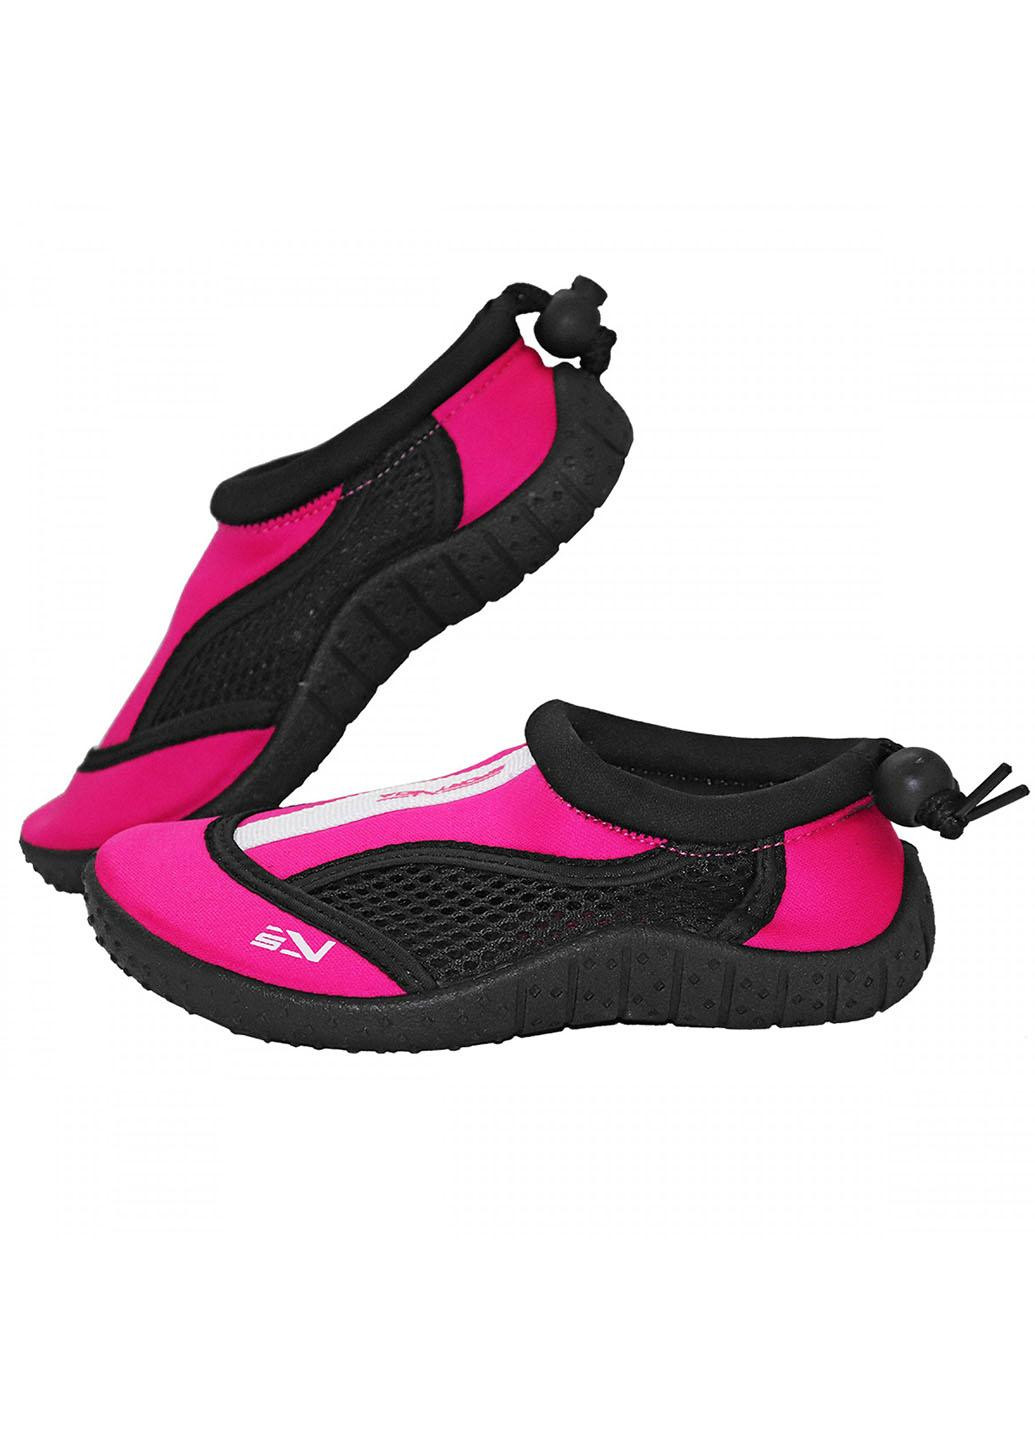 Обувь для пляжа и кораллов (аквашузы) SV-GY0001-R32 Size 32 Black/Pink SportVida (258486780)